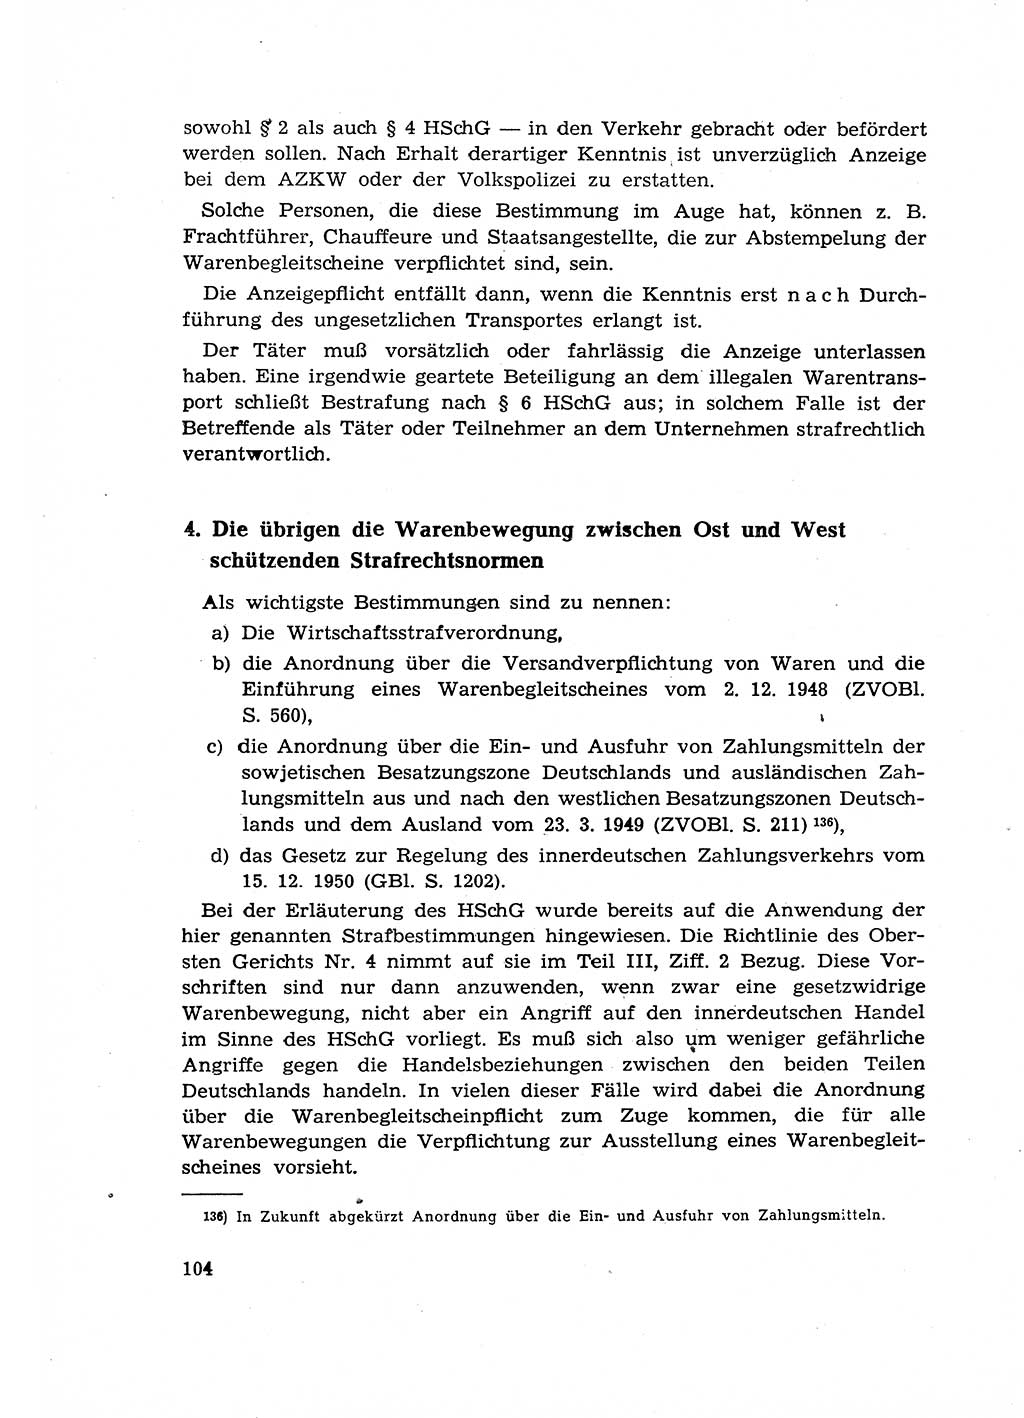 Materialien zum Strafrecht, Besonderer Teil [Deutsche Demokratische Republik (DDR)] 1955, Seite 104 (Mat. Strafr. BT DDR 1955, S. 104)